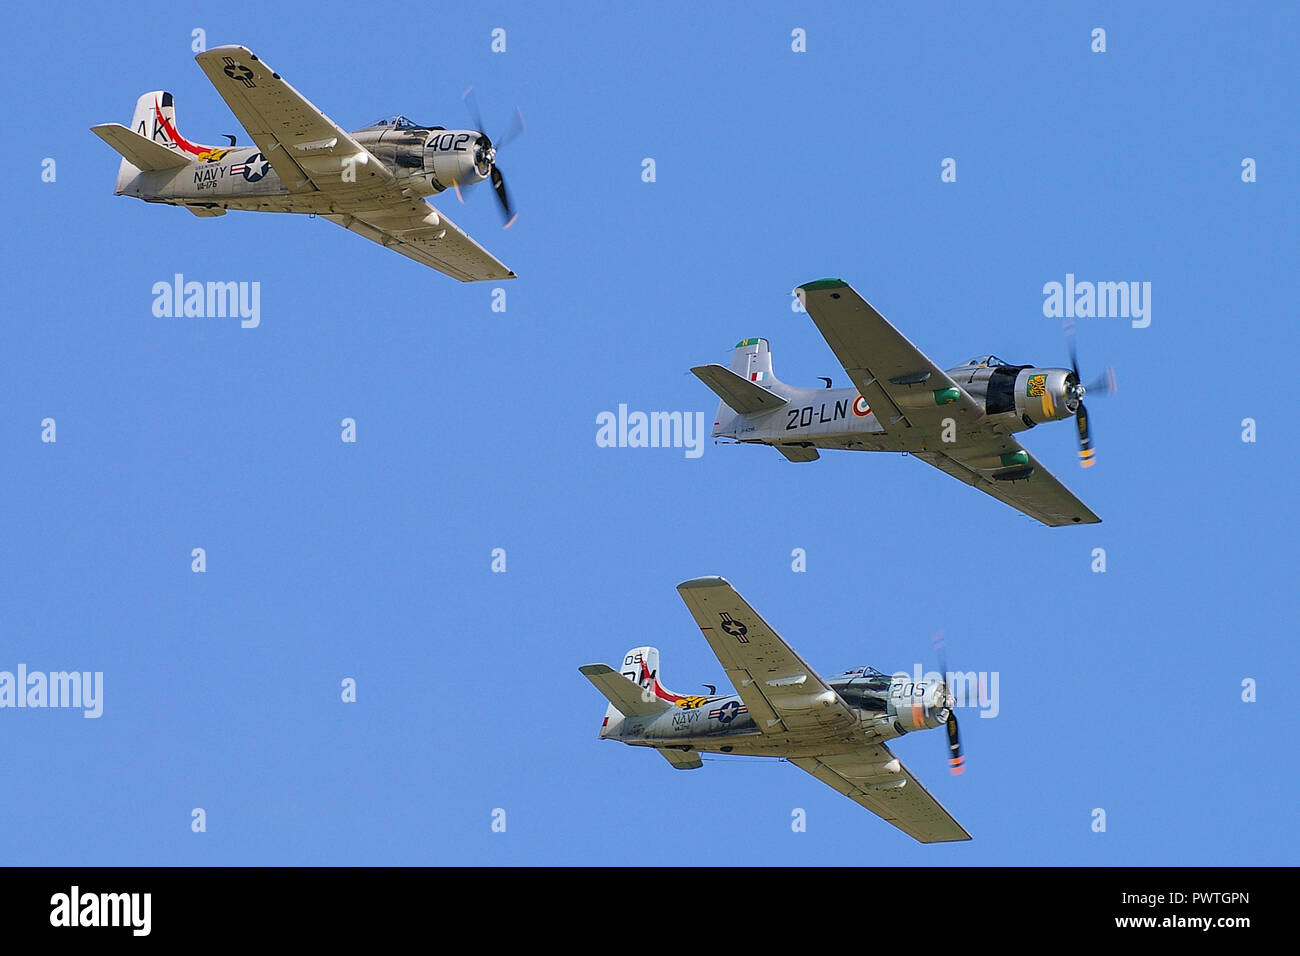 Trio aus Douglas A-1 Skyraider (früher AD Skyraider) US-amerikanische einsitzige Angriffsflugzeuge, die auf einer Flugschau fliegen. Flugzeuge aus der Vietnam-Ära Stockfoto